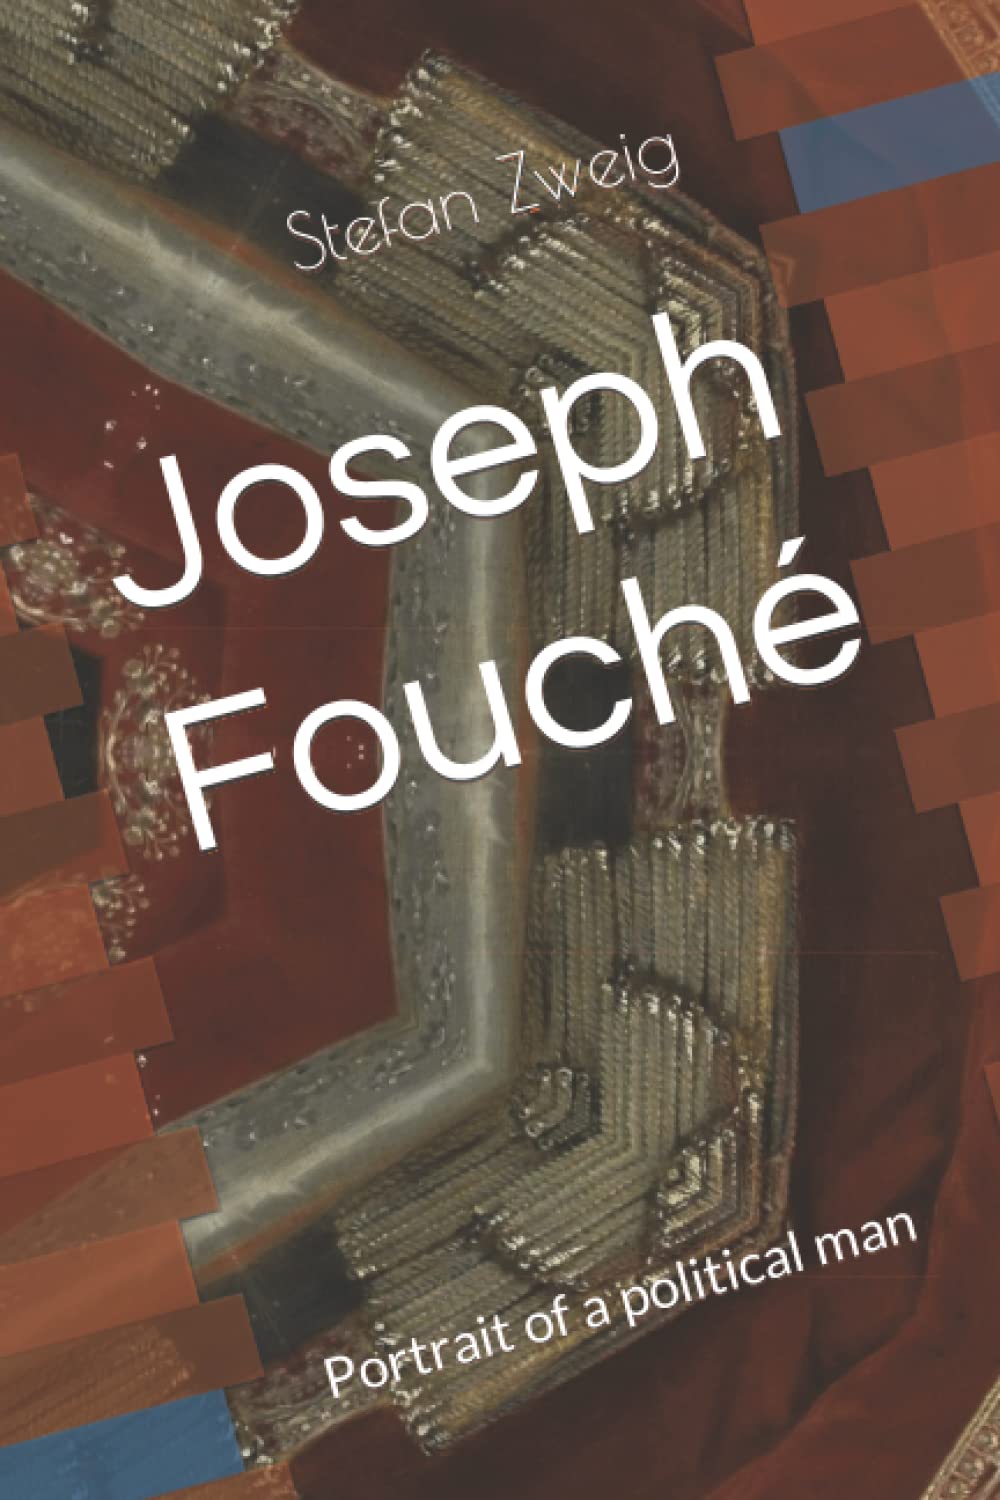 Joseph Fouche Portrait of a political man